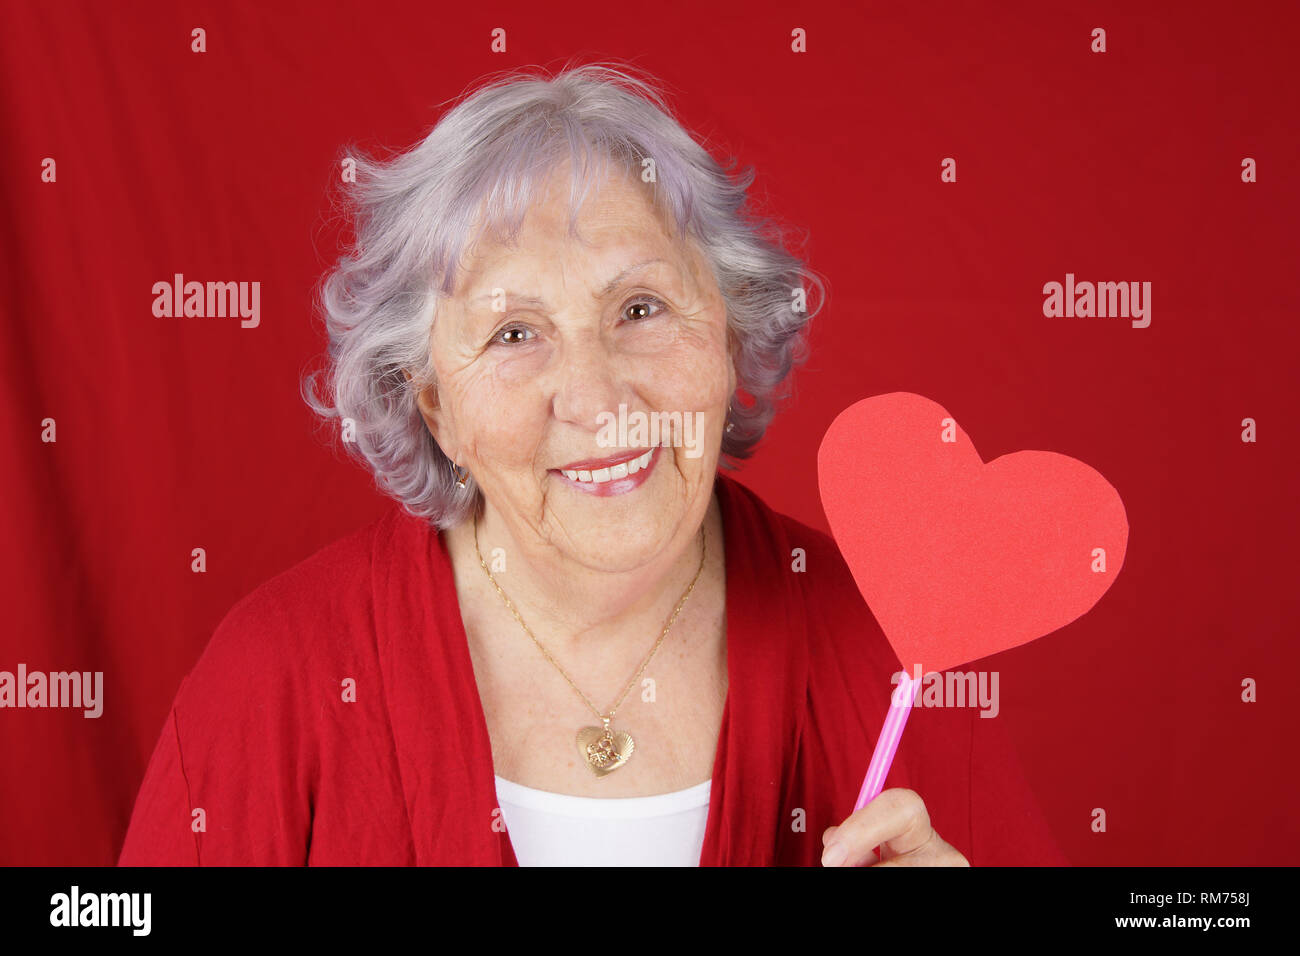 Ältere Frau oder Oma mit herzförmigen Schild, Tag Valentinstag Konzept Stockfoto